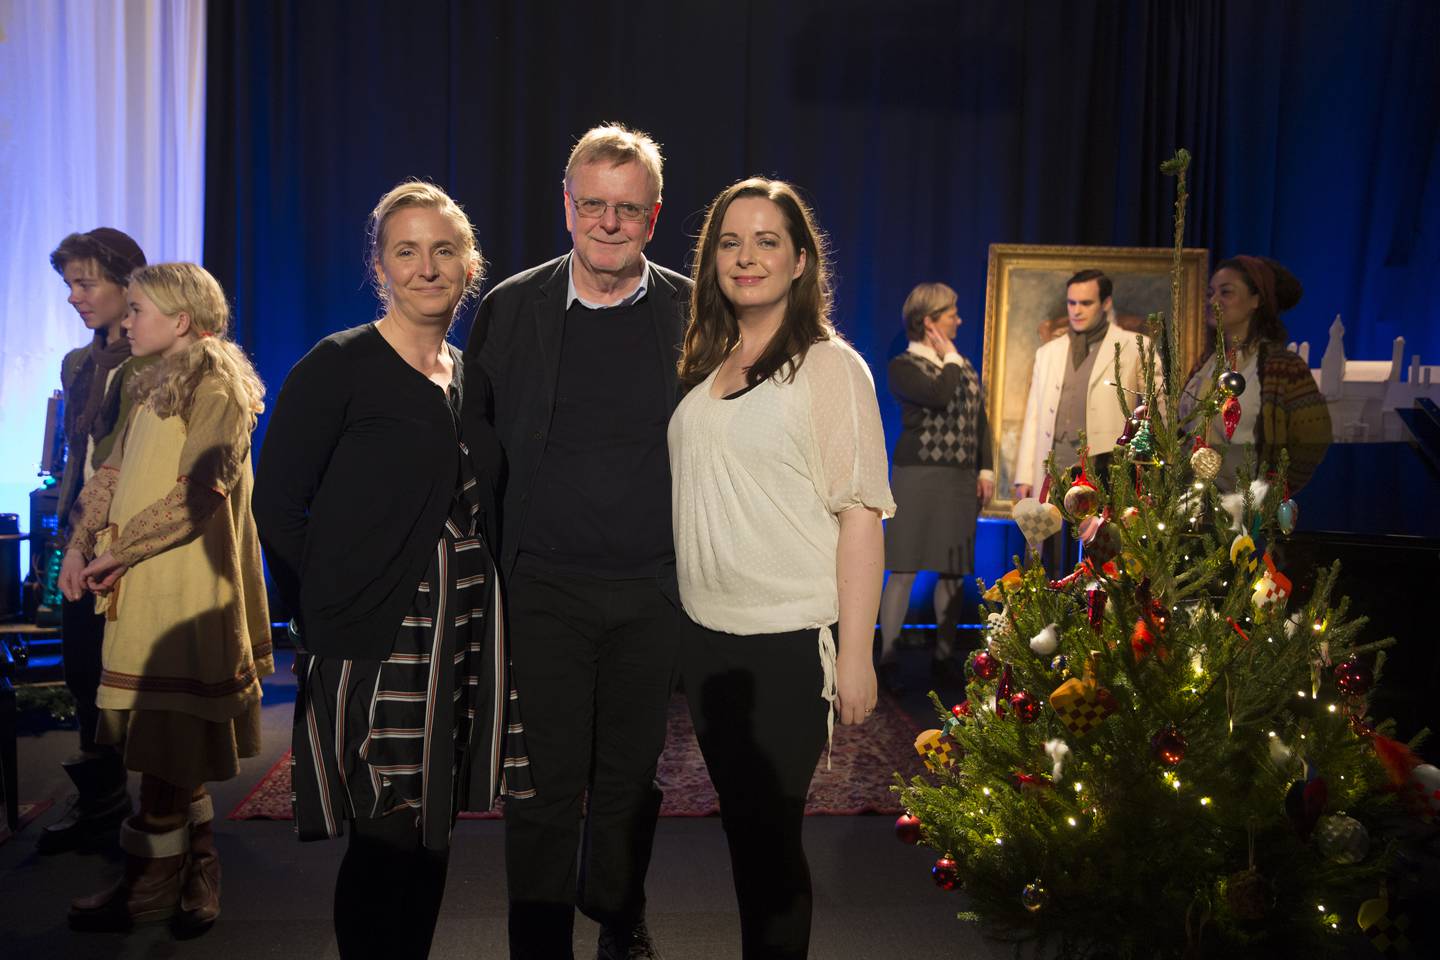 Manusforfatterne Hilde, Klaus og Hanne Hagerup under presentasjonen av NRKs julekalender «Snøfall» i 2016. I bakgrunnen ser man flere av skuespillerne som medvirker i serien.